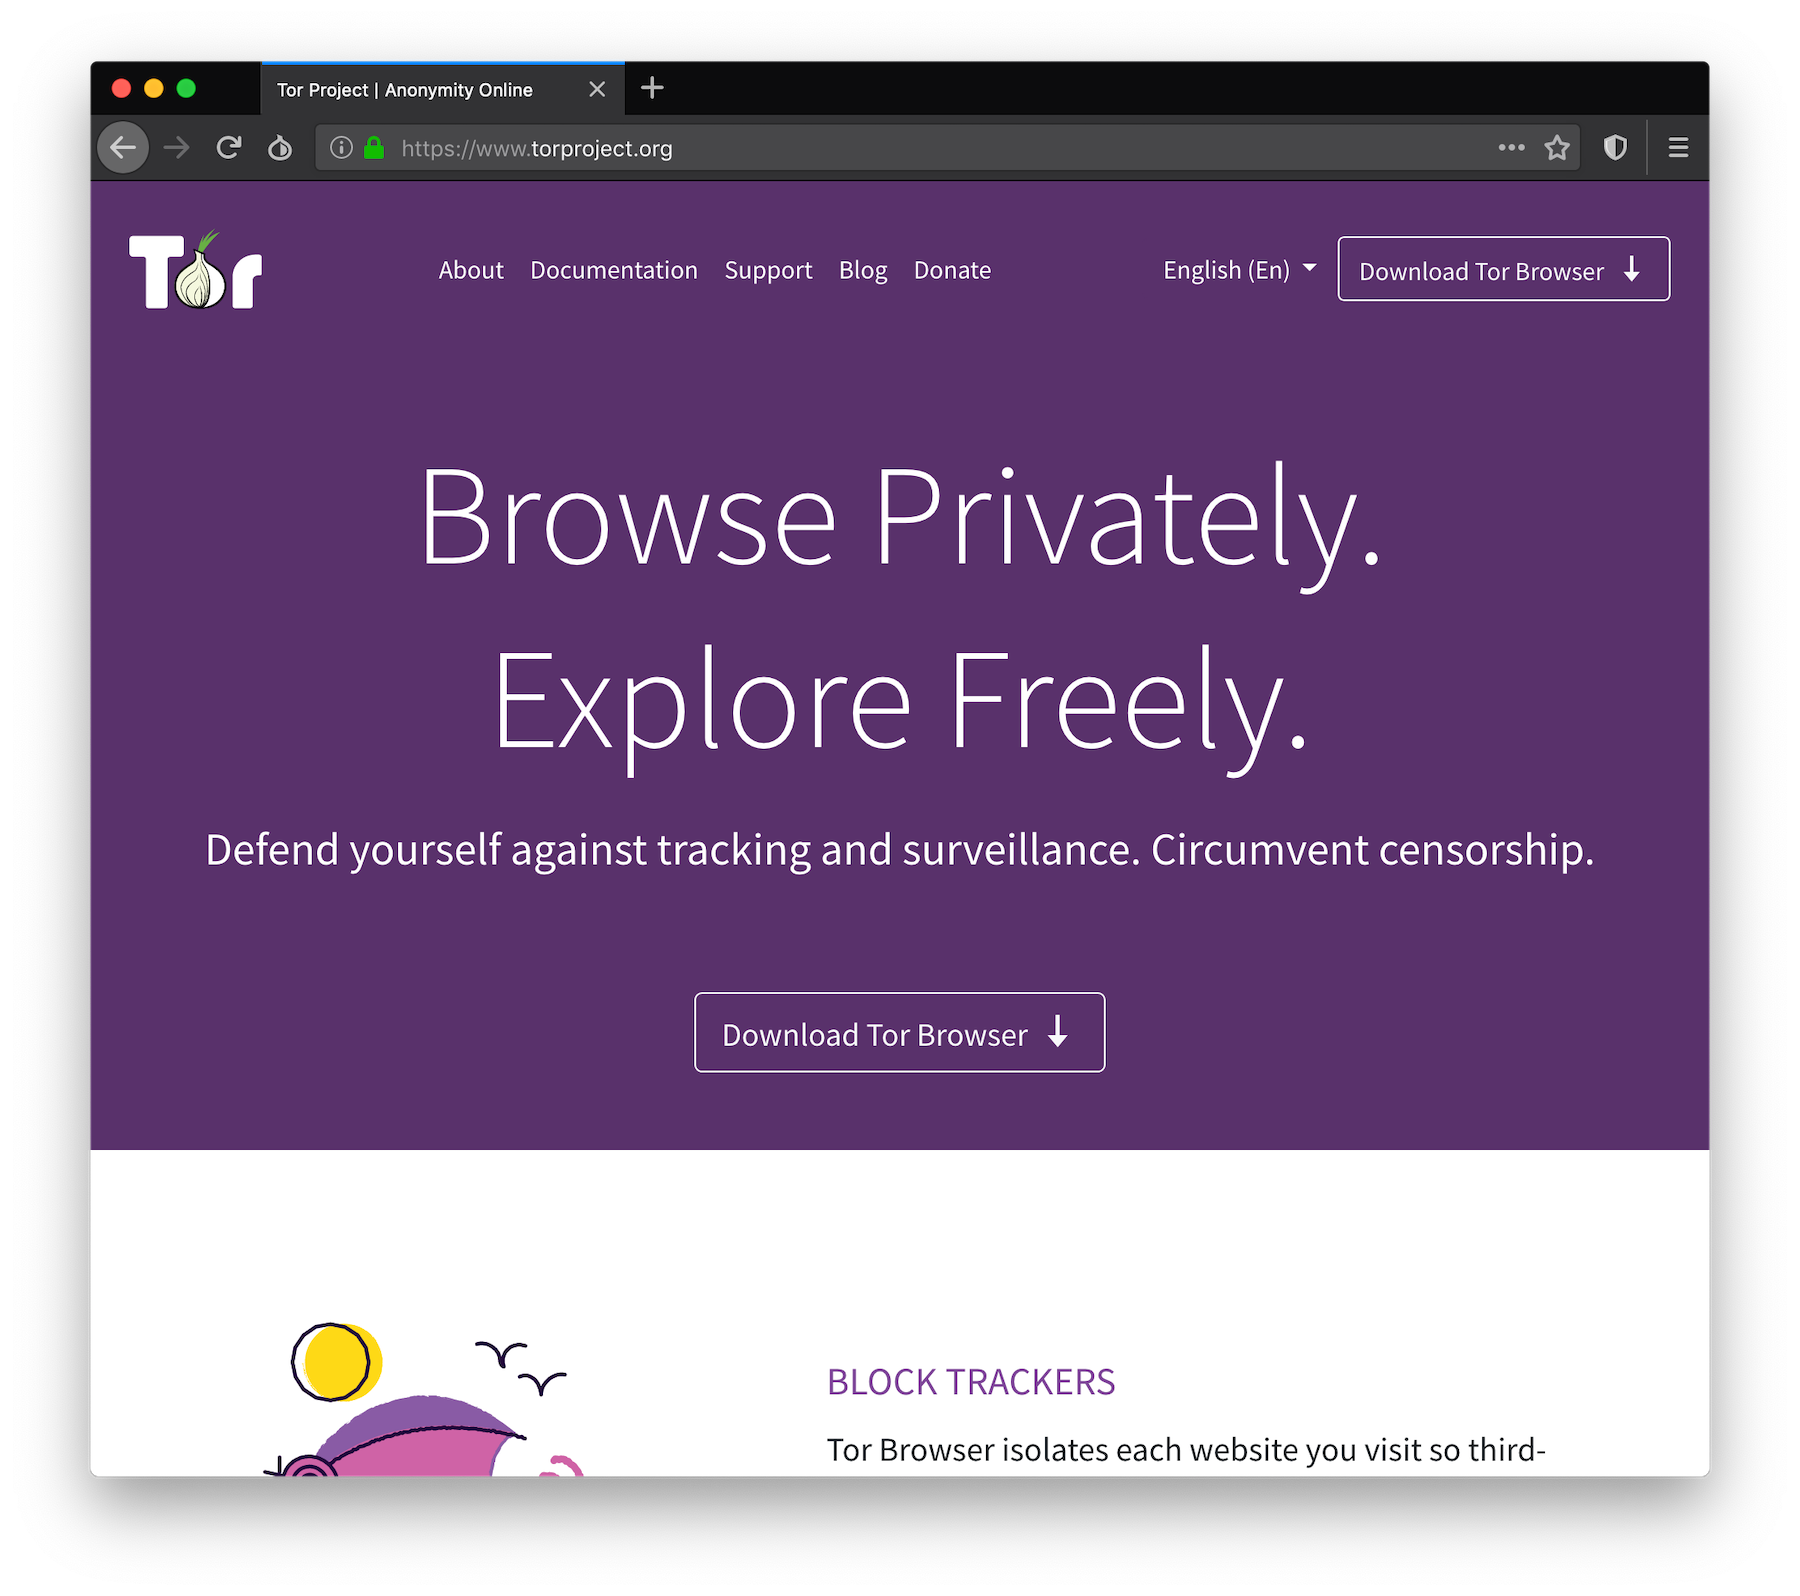 Tor browser play videos gidra статистика потребления наркотиков в россии